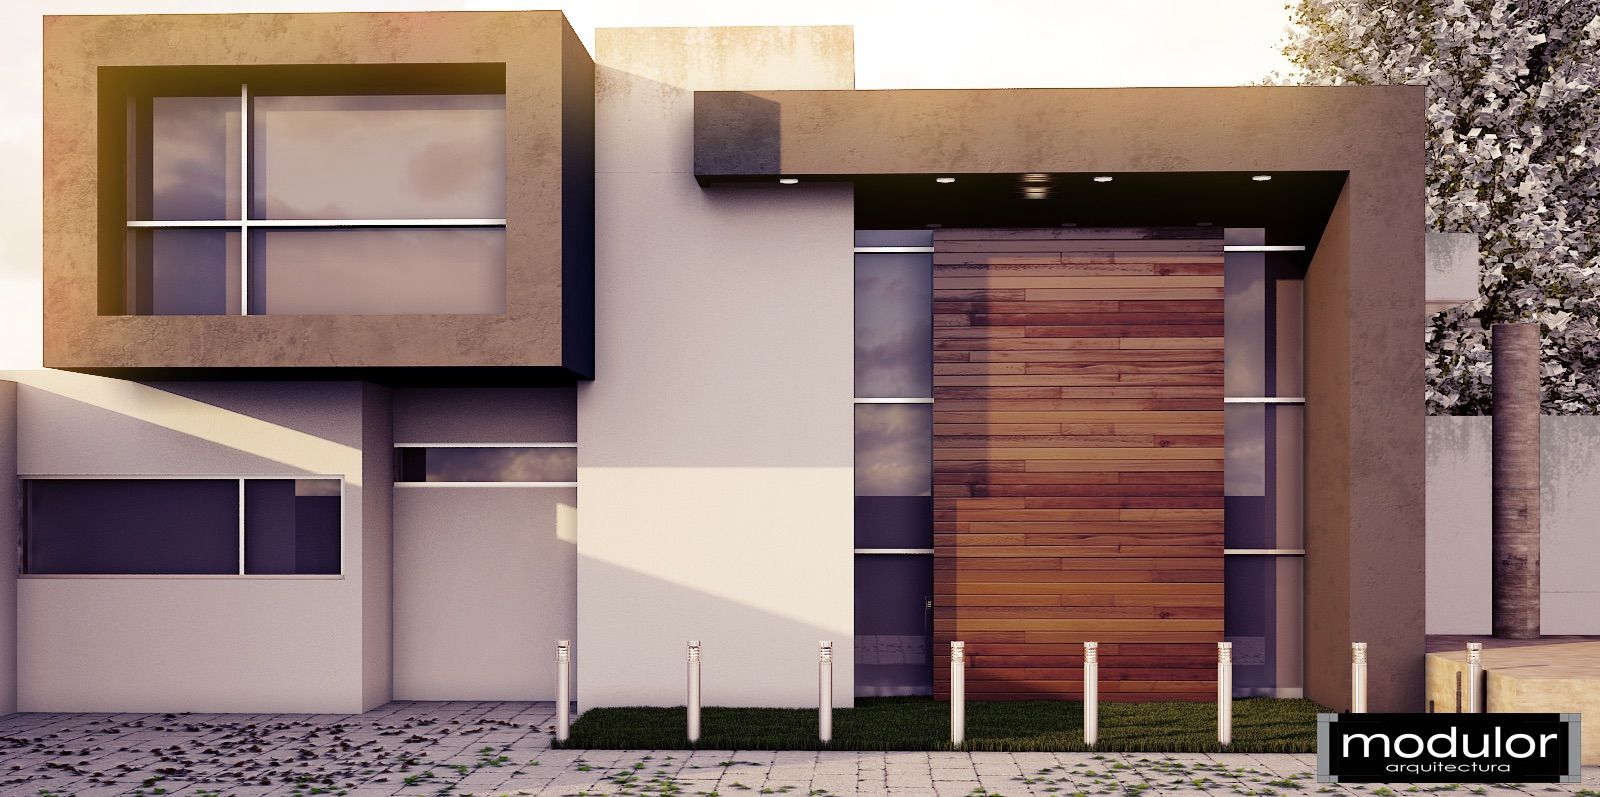 Casa de Campo MM, Modulor Arquitectura Modulor Arquitectura Casas estilo moderno: ideas, arquitectura e imágenes Concreto